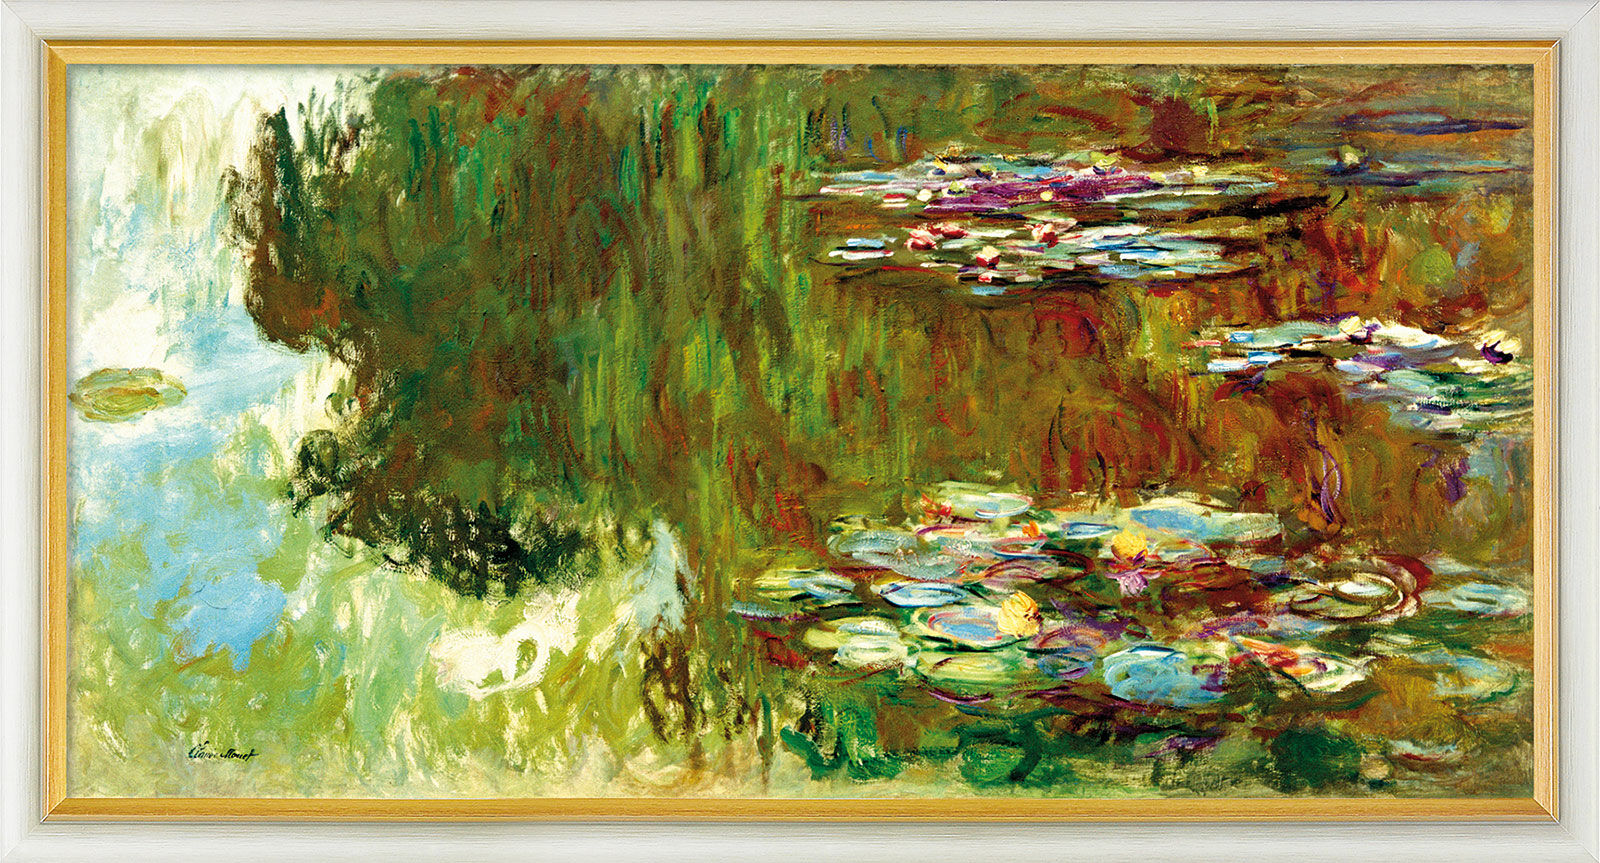 Billede "Le bassin aux nymphéas" (1917-1919), indrammet von Claude Monet